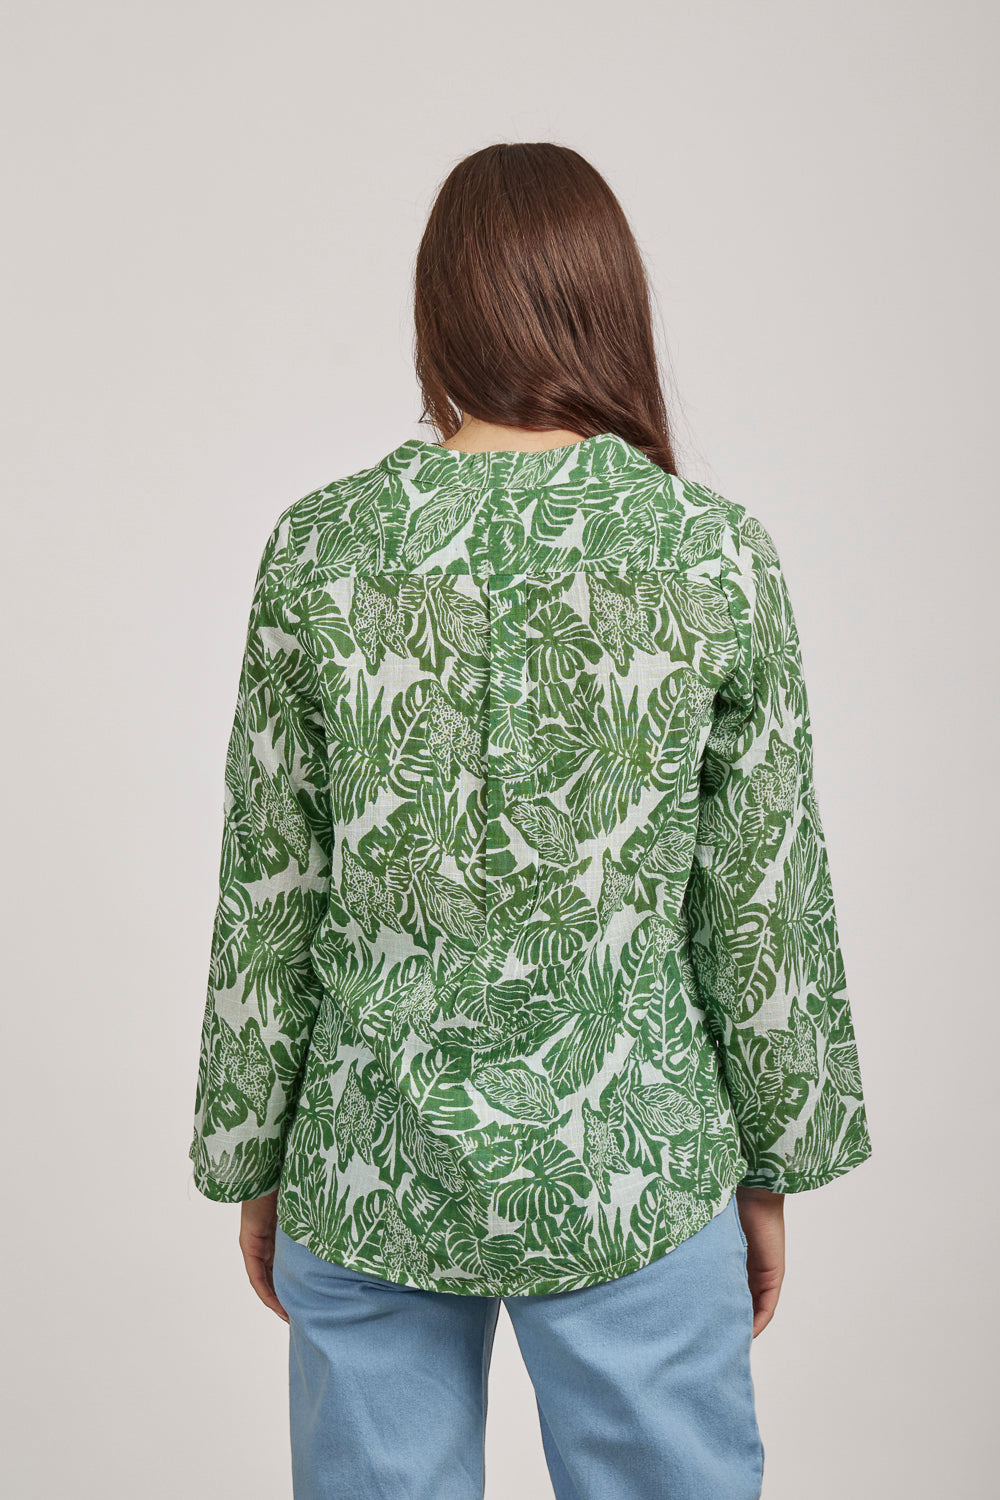 Cotton Slub Palm Leaves Print Shirt